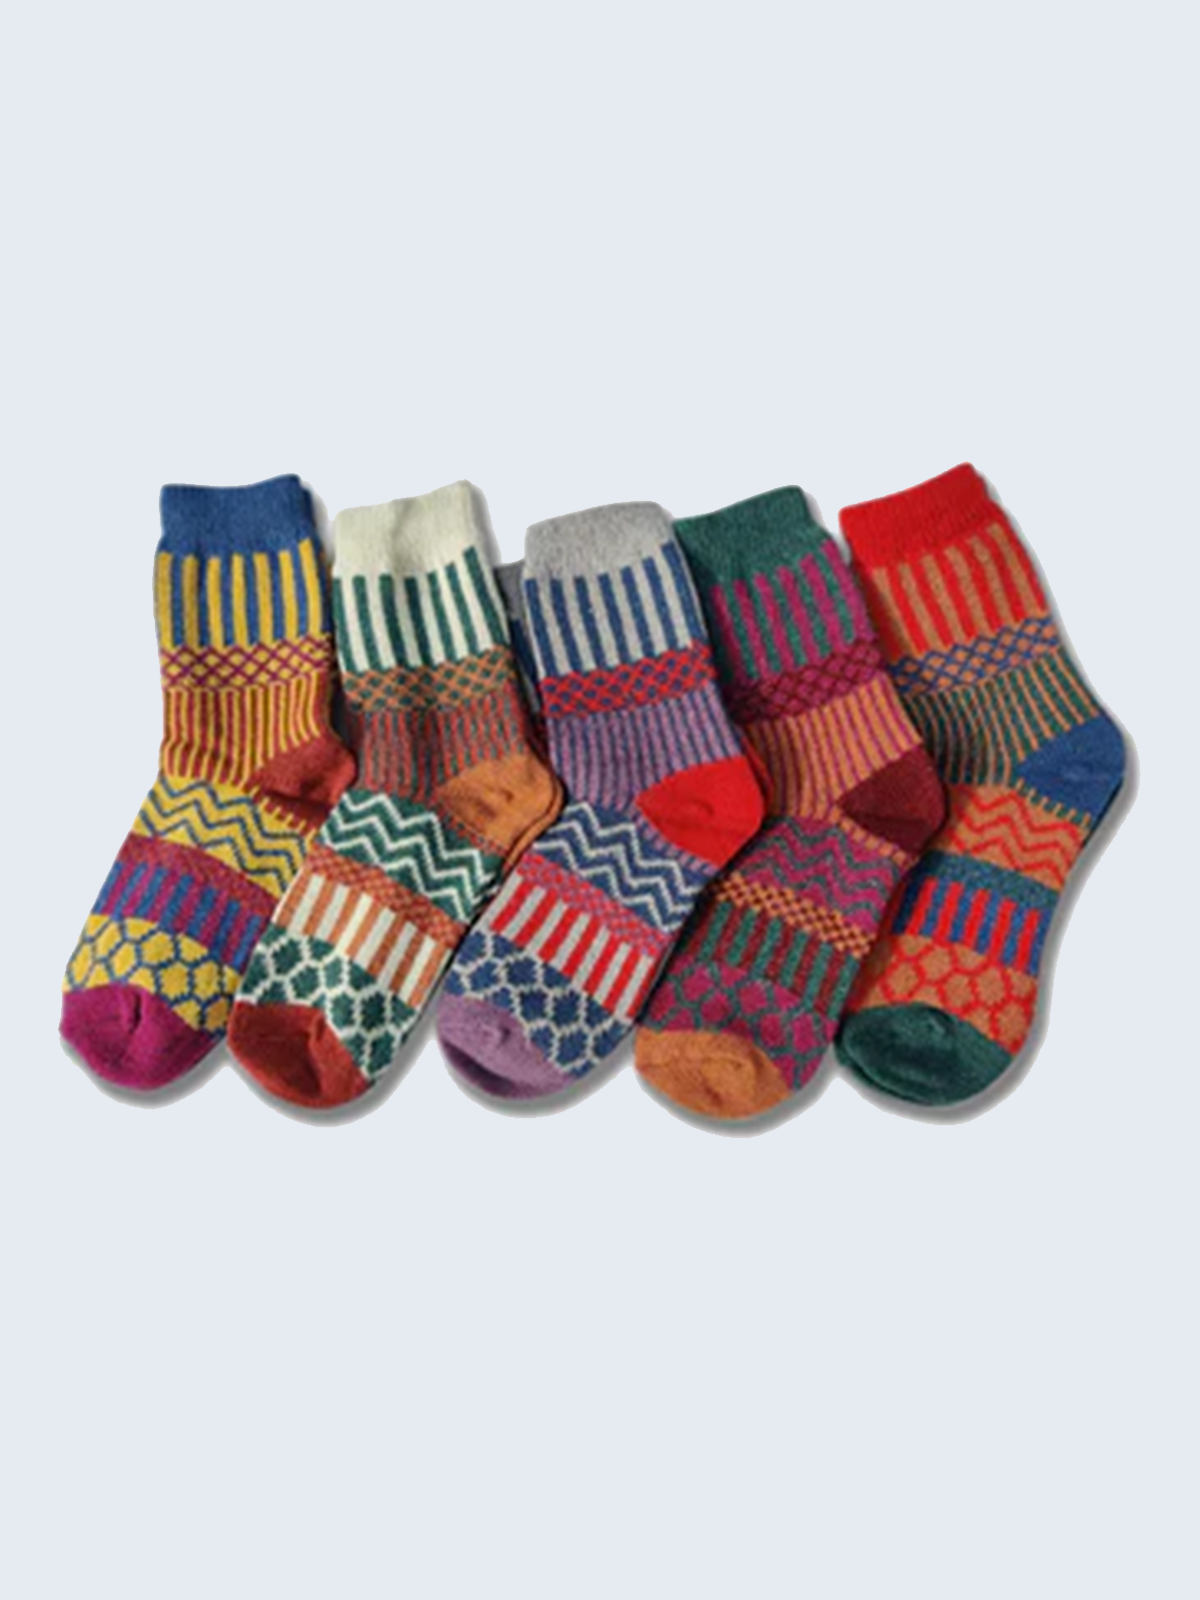 5 Pairs of Patterned Wool Socks